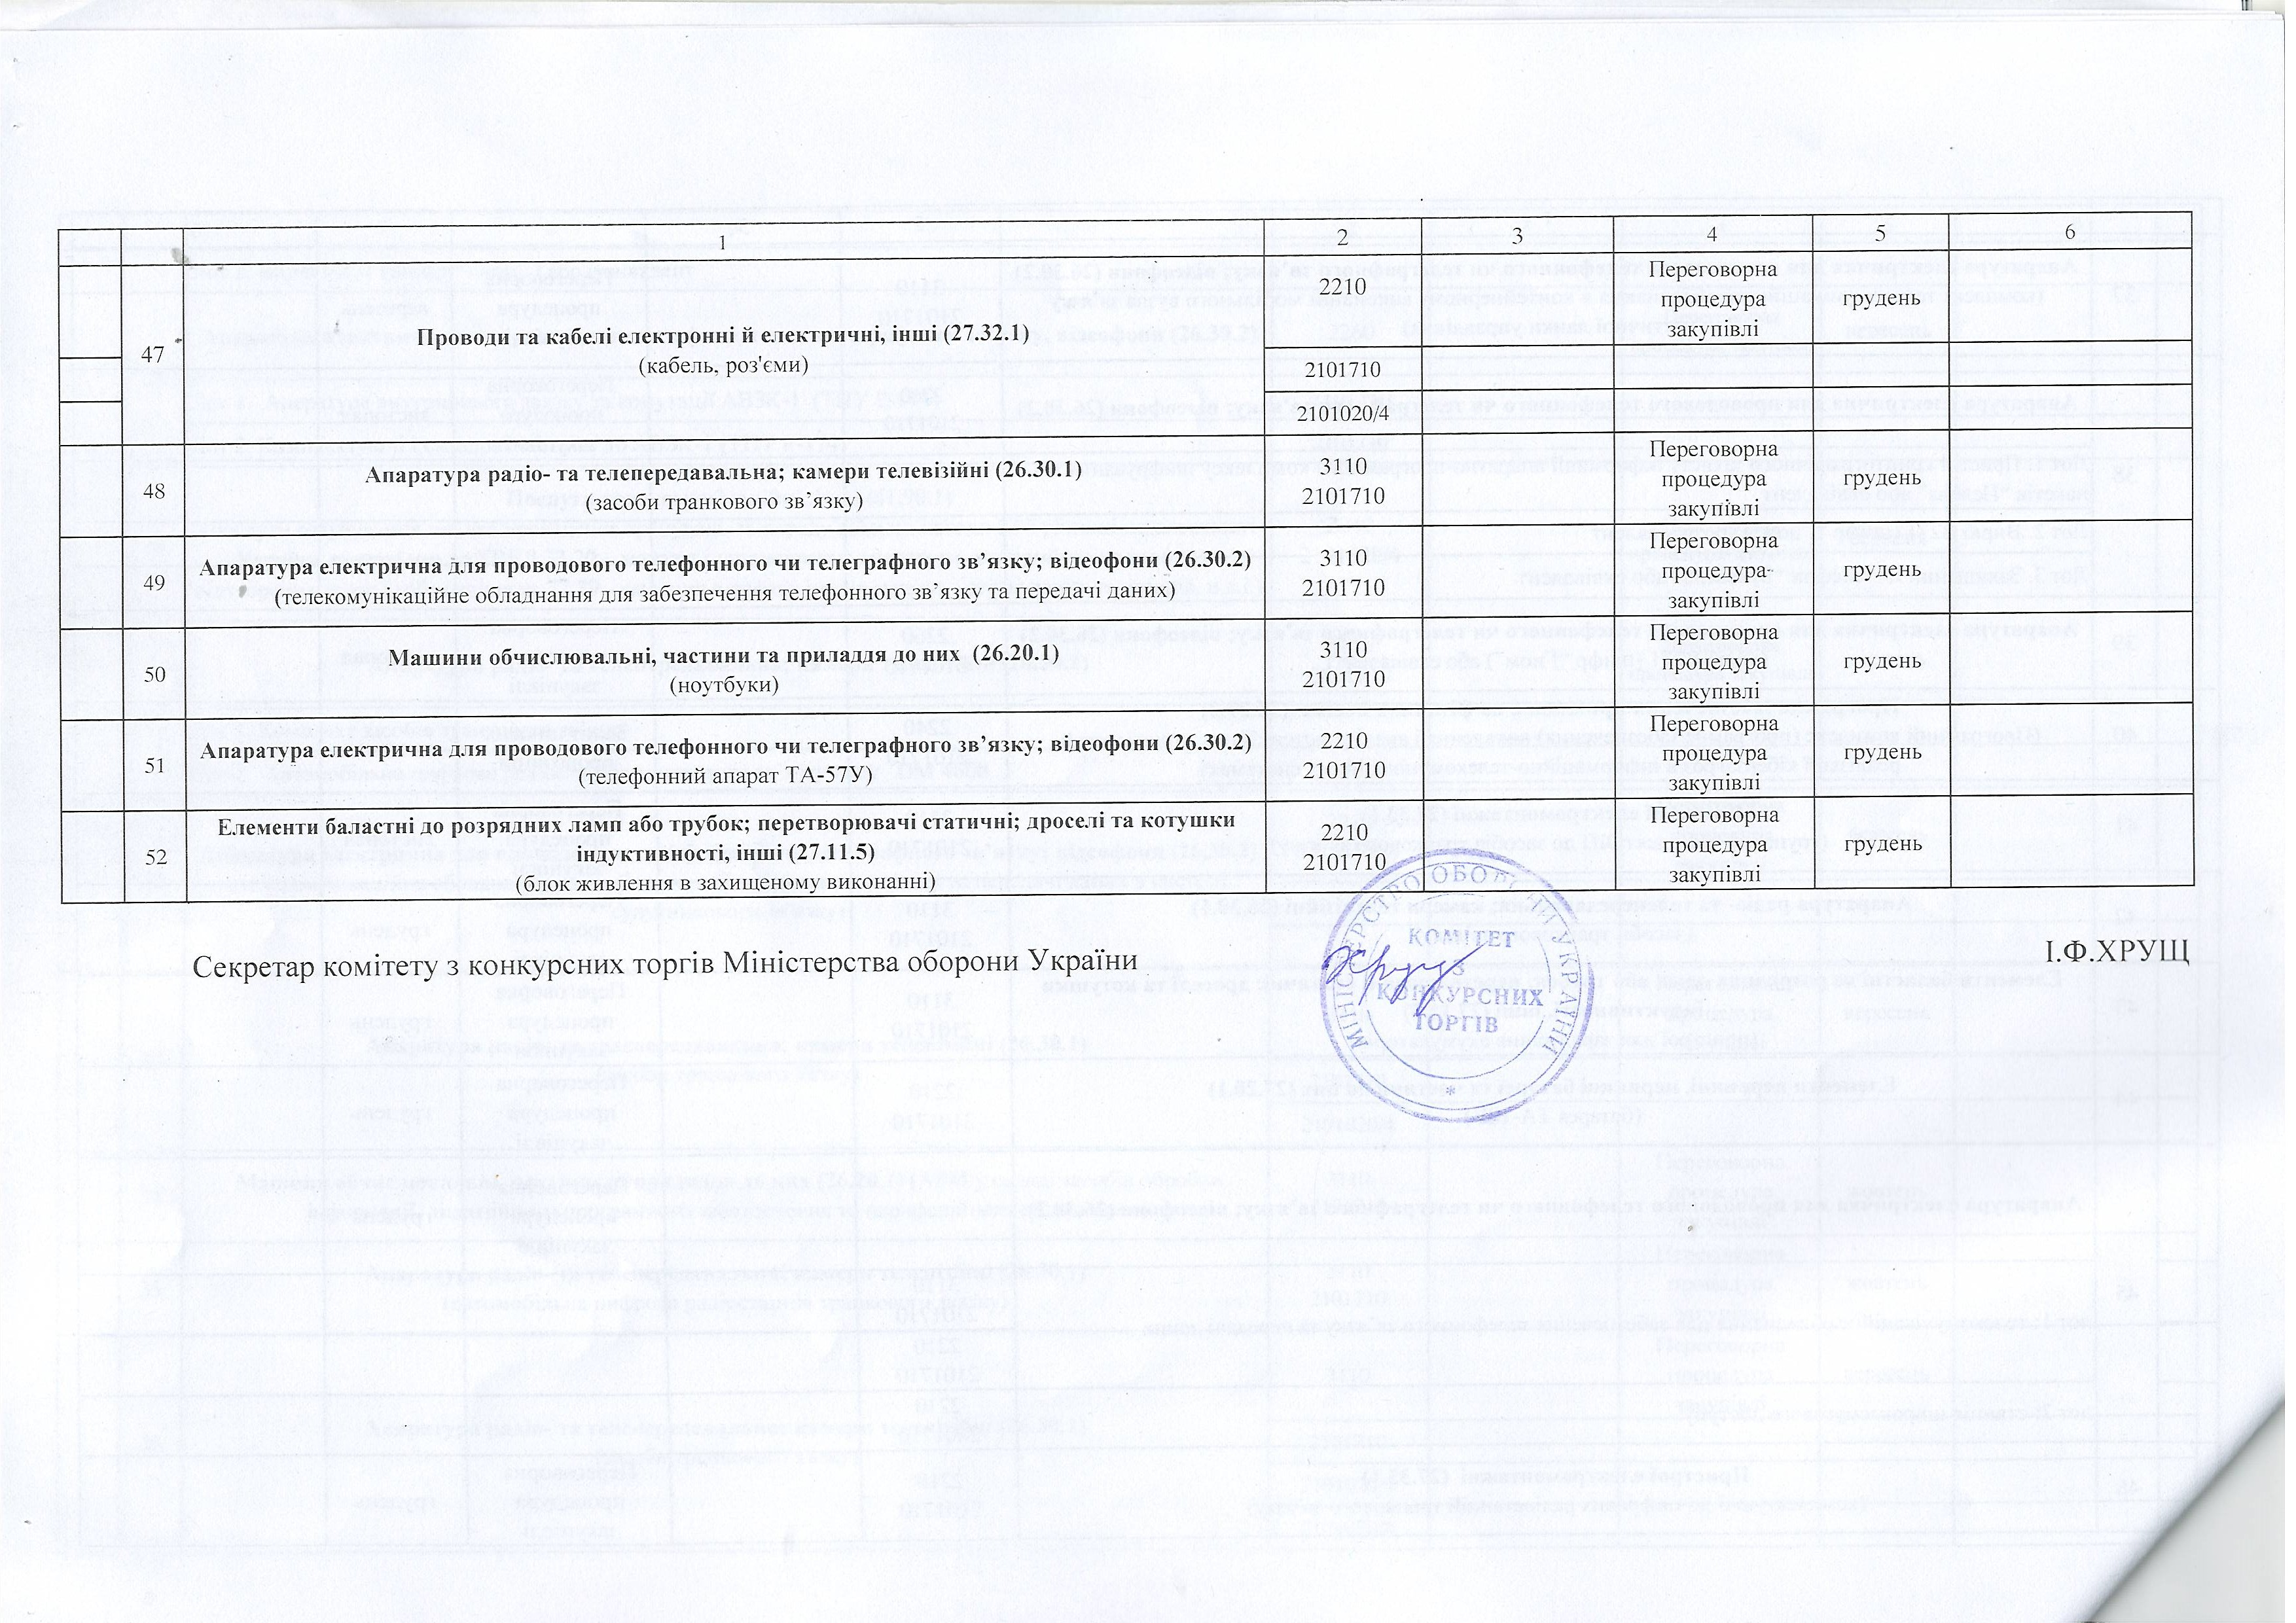 Лист міністерства оборони України від 13 липня 2015 року